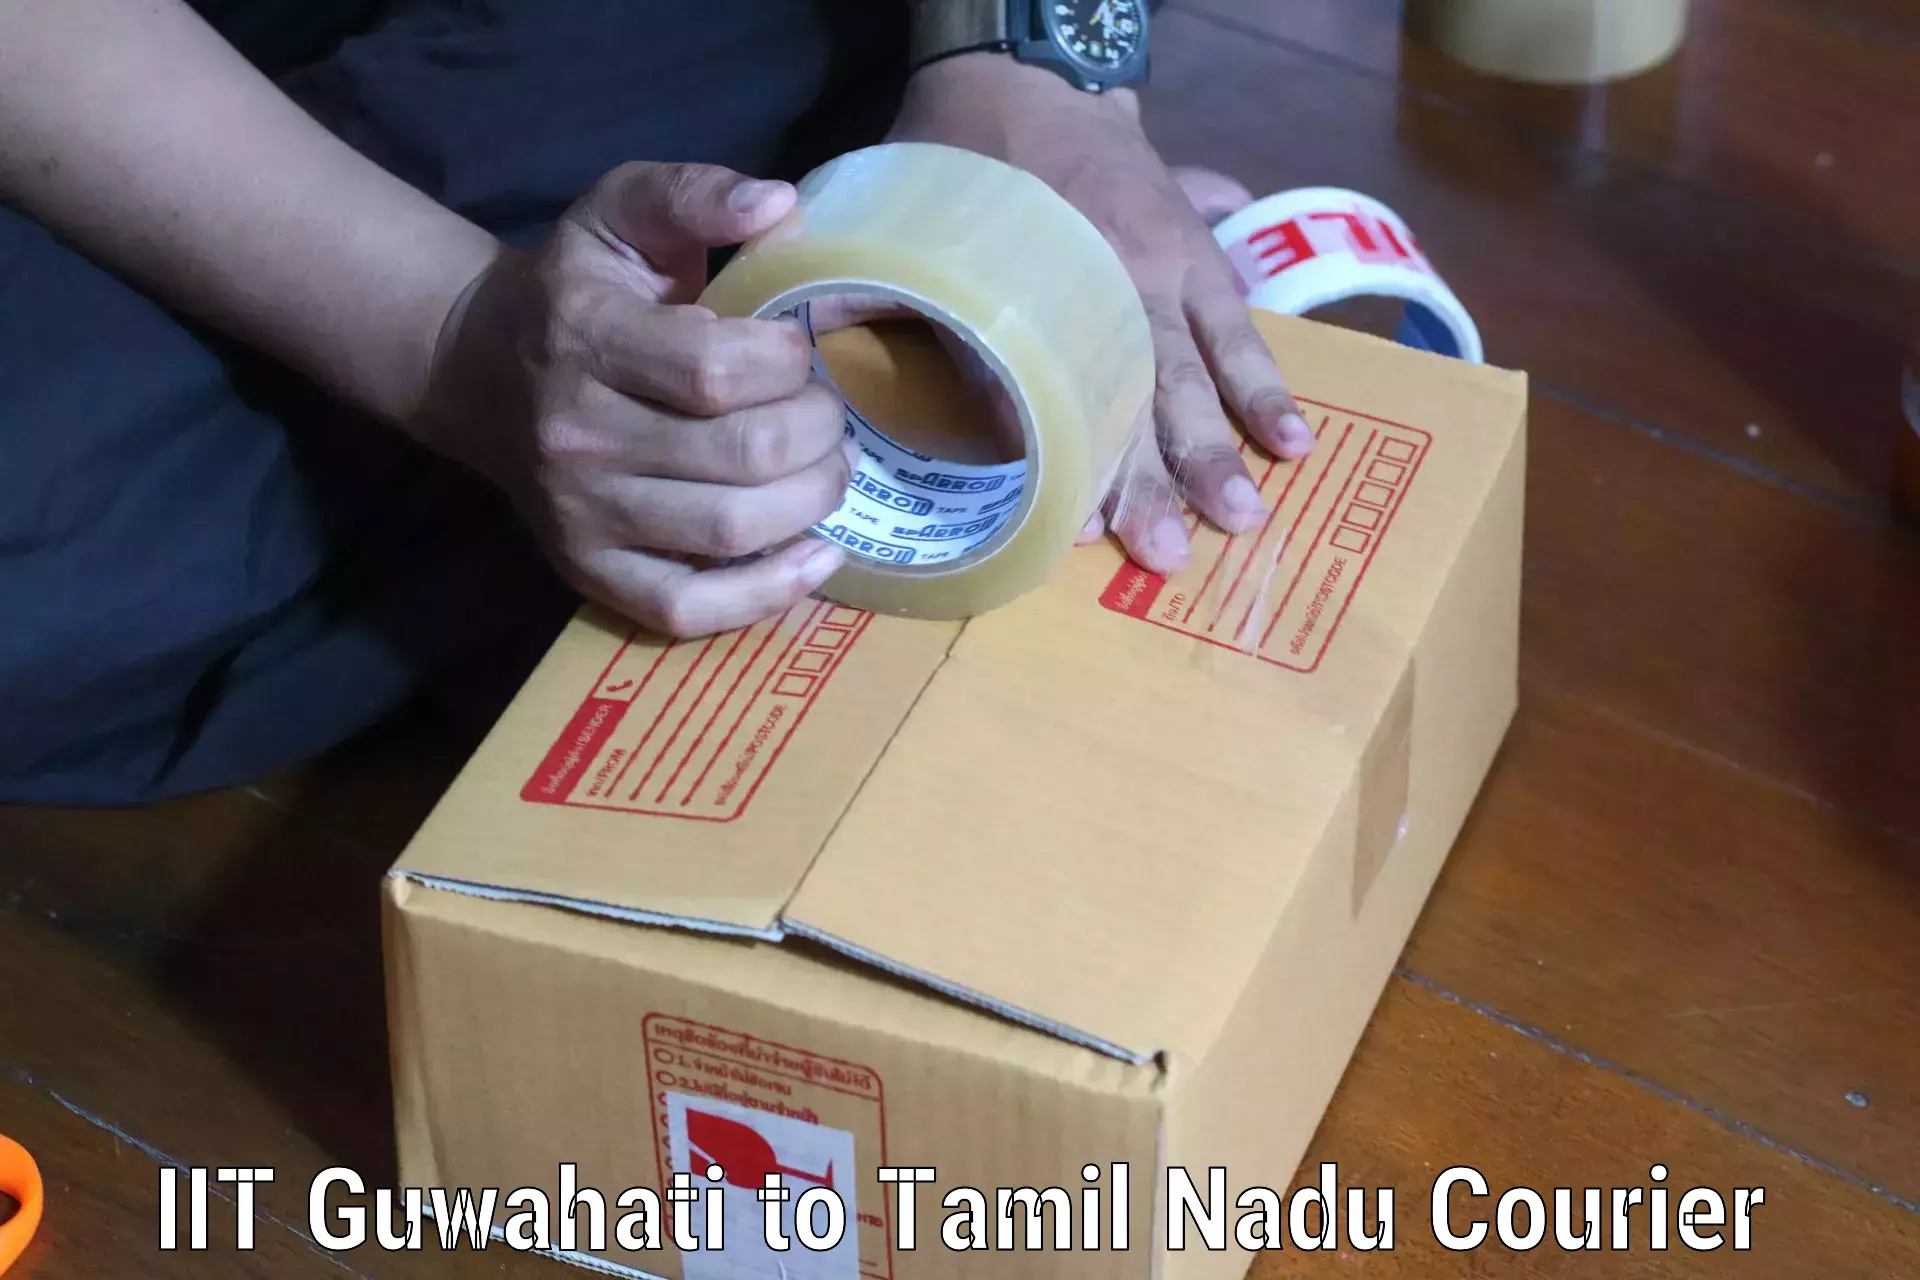 Professional courier services IIT Guwahati to Gudiyattam